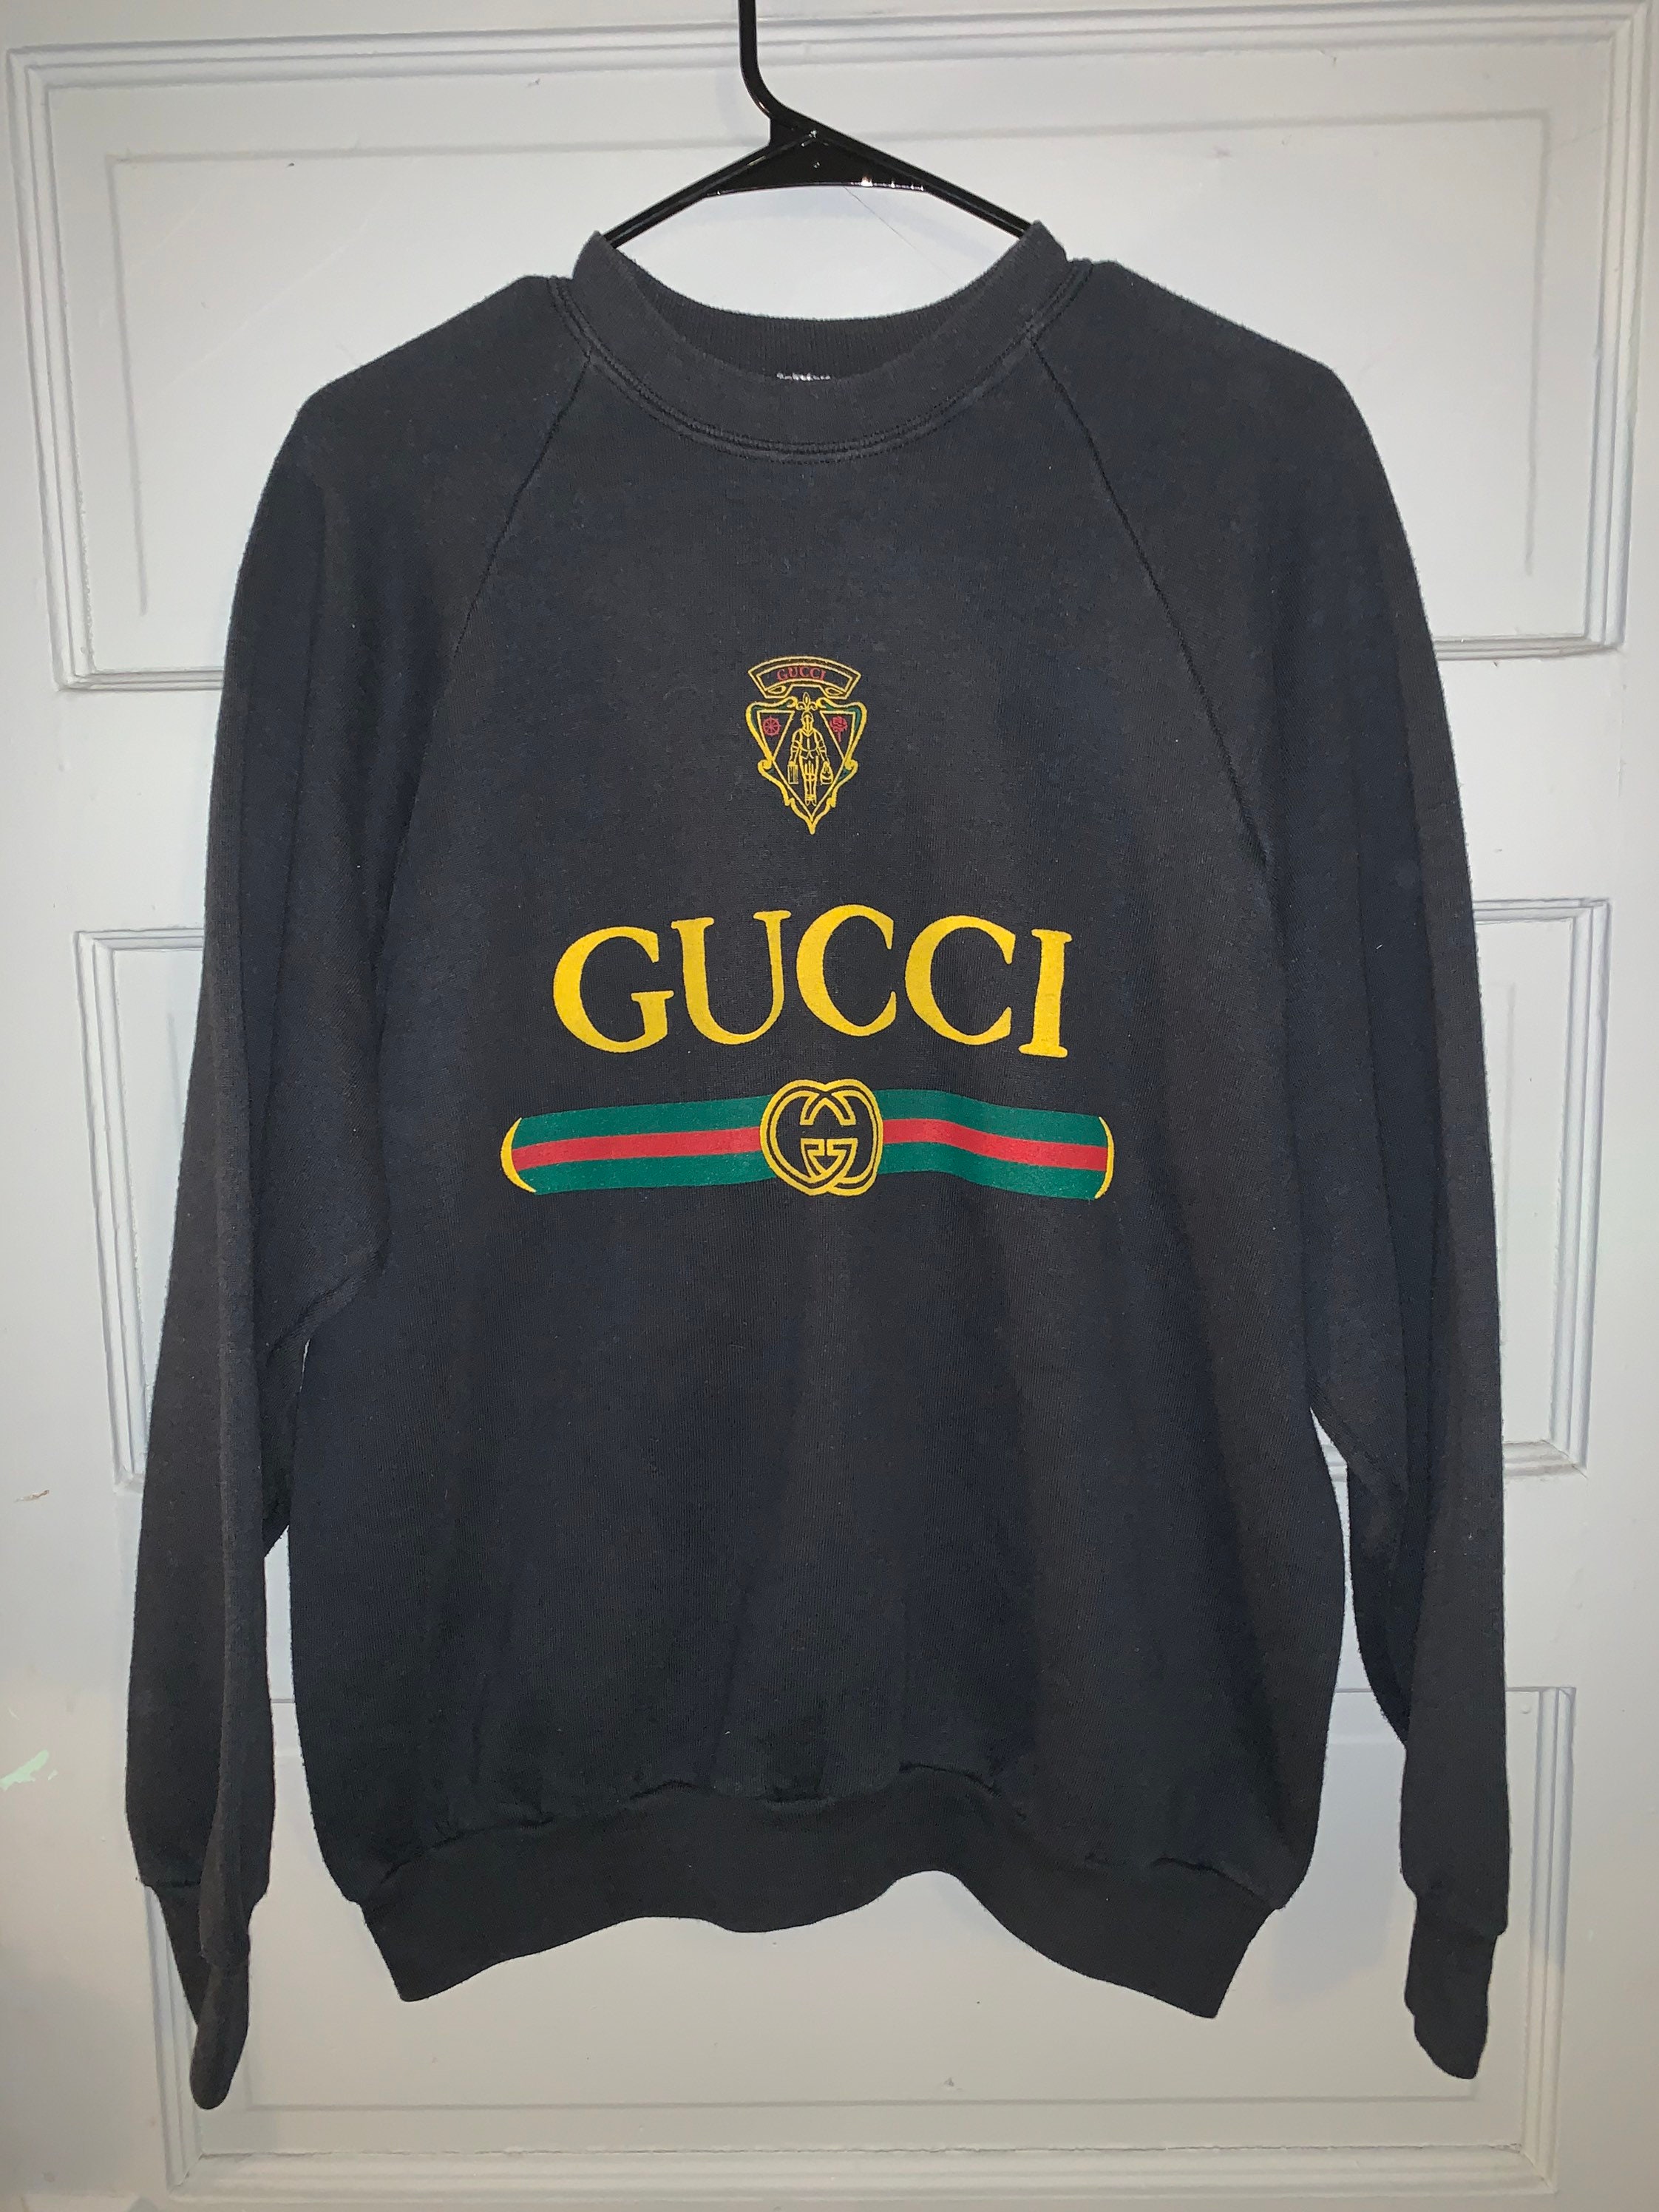 Vintage Gucci Crewneck Etsy